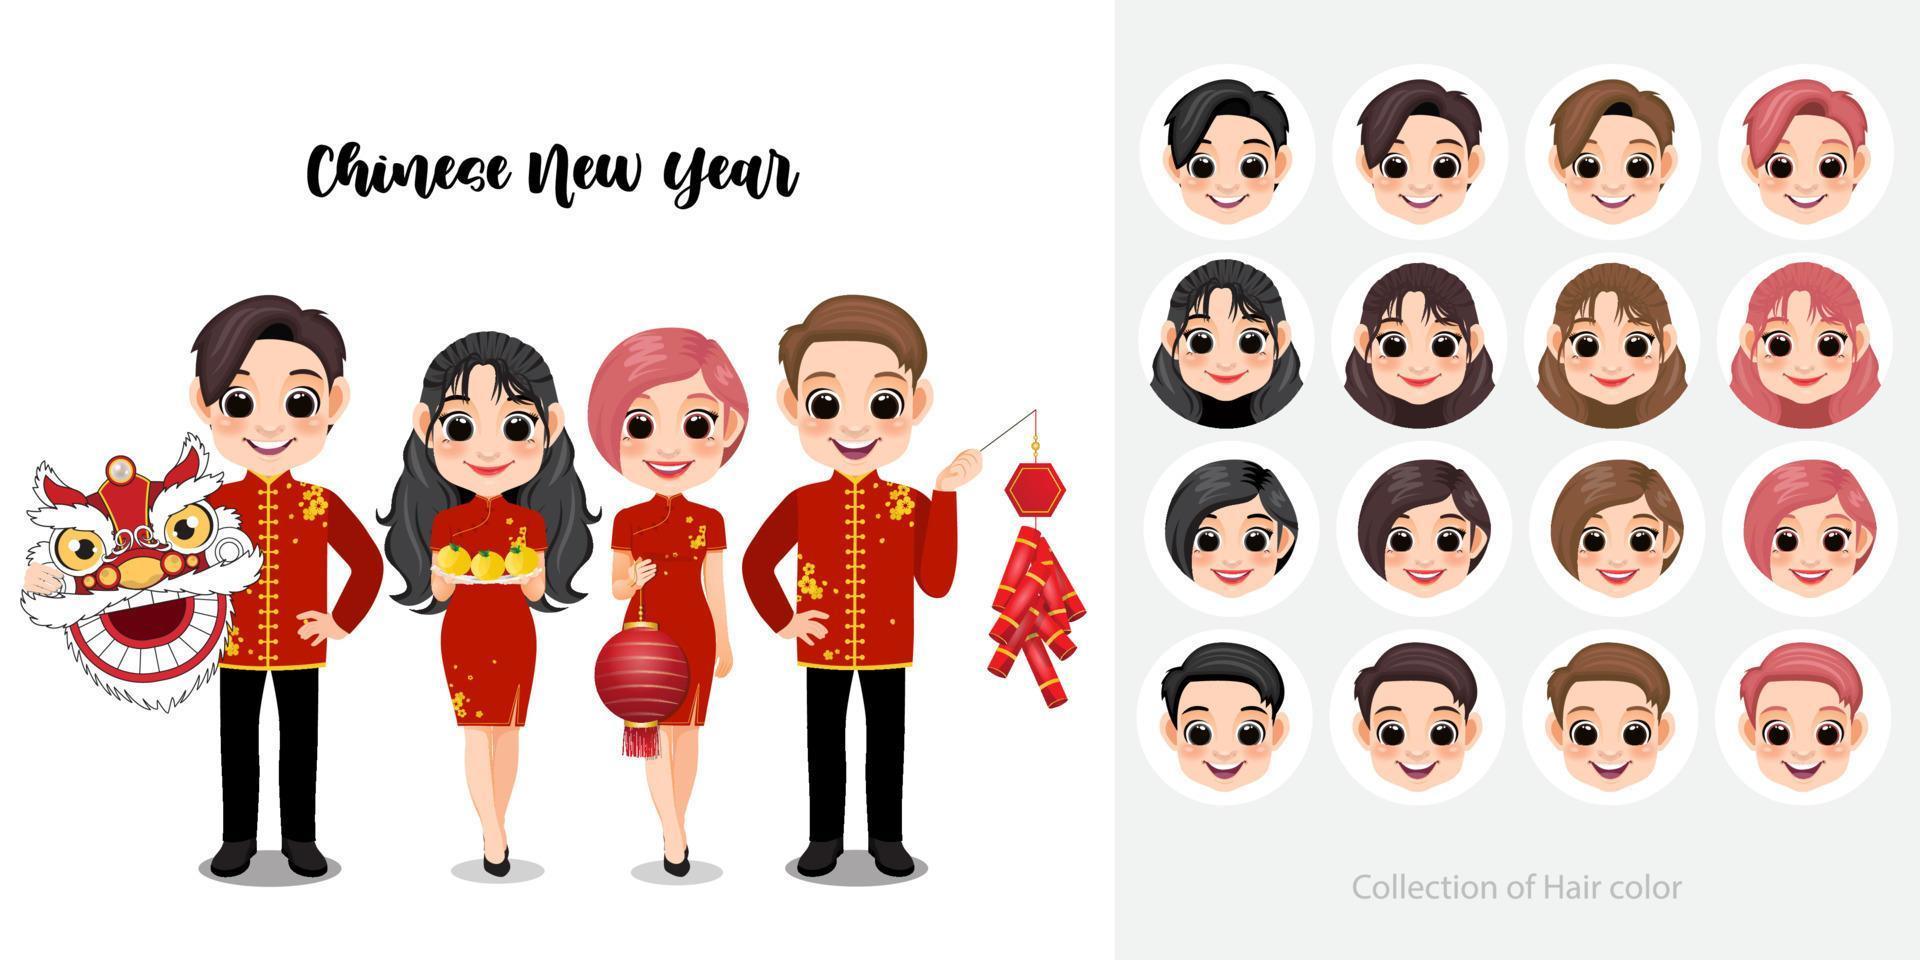 chinesisches neujahr mit kindern, die drachenkopf, orange, laterne, cracker auf weißem hintergrund und sammlung des haarfarben-zeichentrickfigurvektors halten vektor